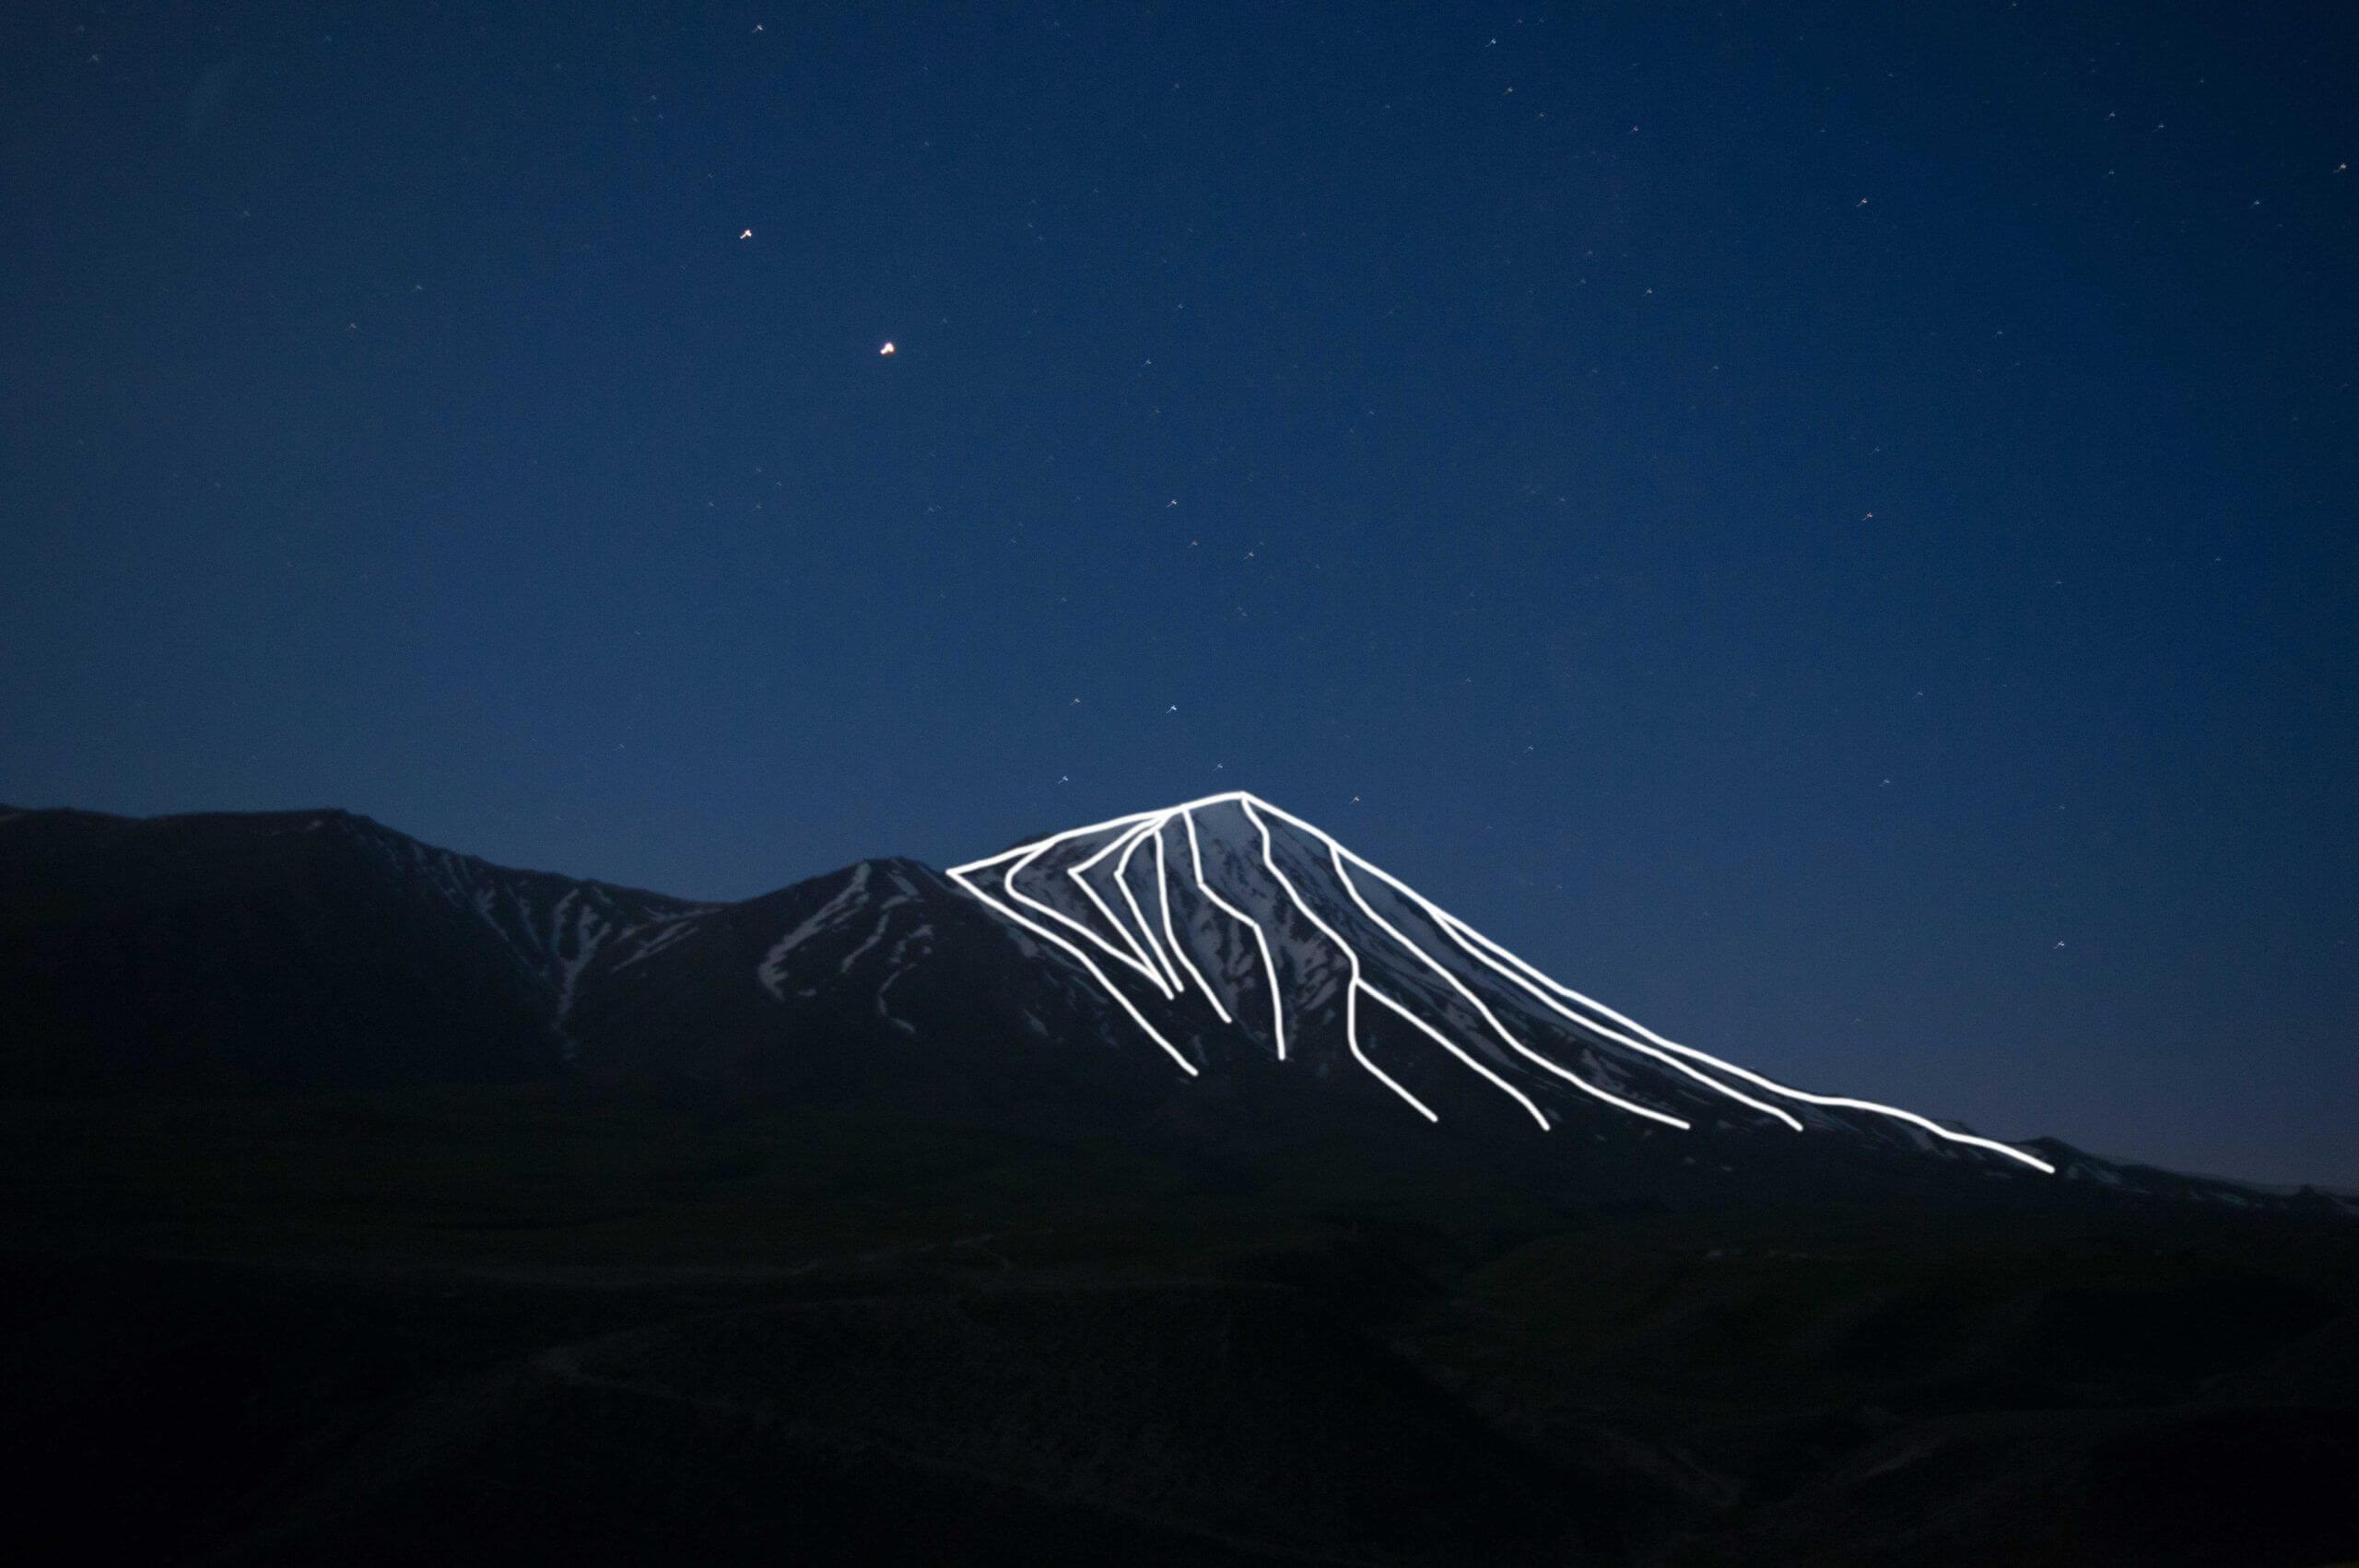 Europe Évènement - Photo d'une montagne avec projection laser de tracés soulignant ses reliefs